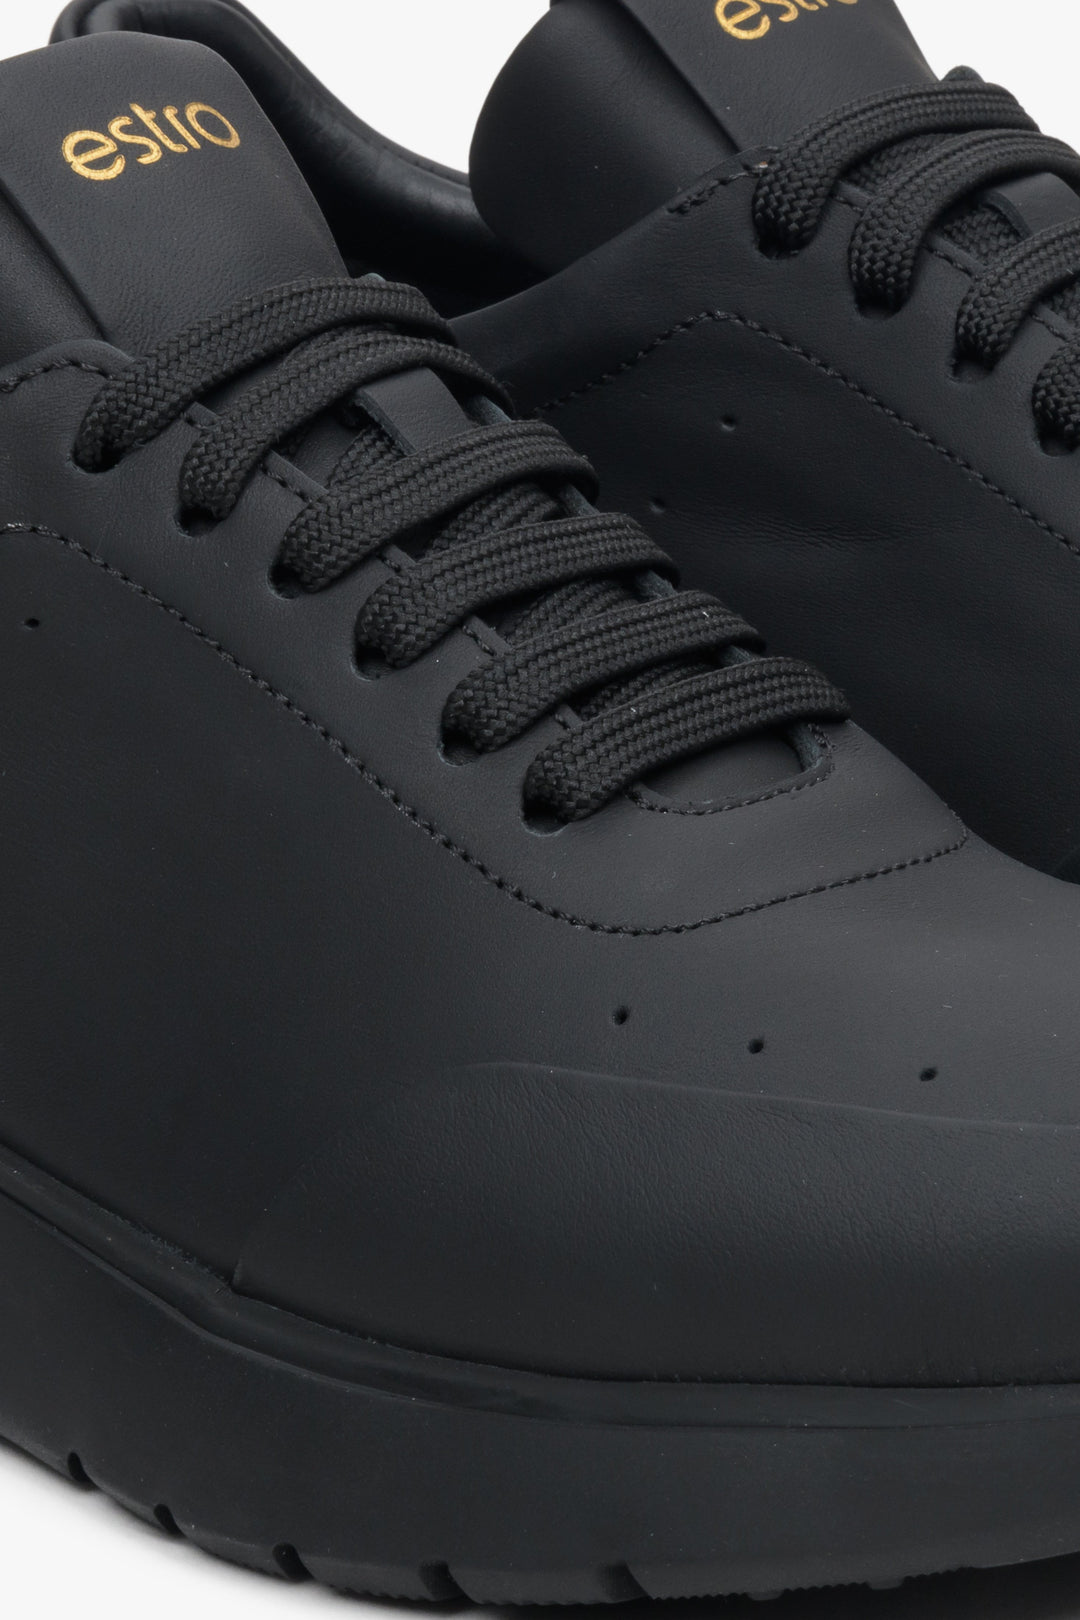 Damskie, skórzane sneakersy Estro w kolorze czarnym - zbliżenie na detal.